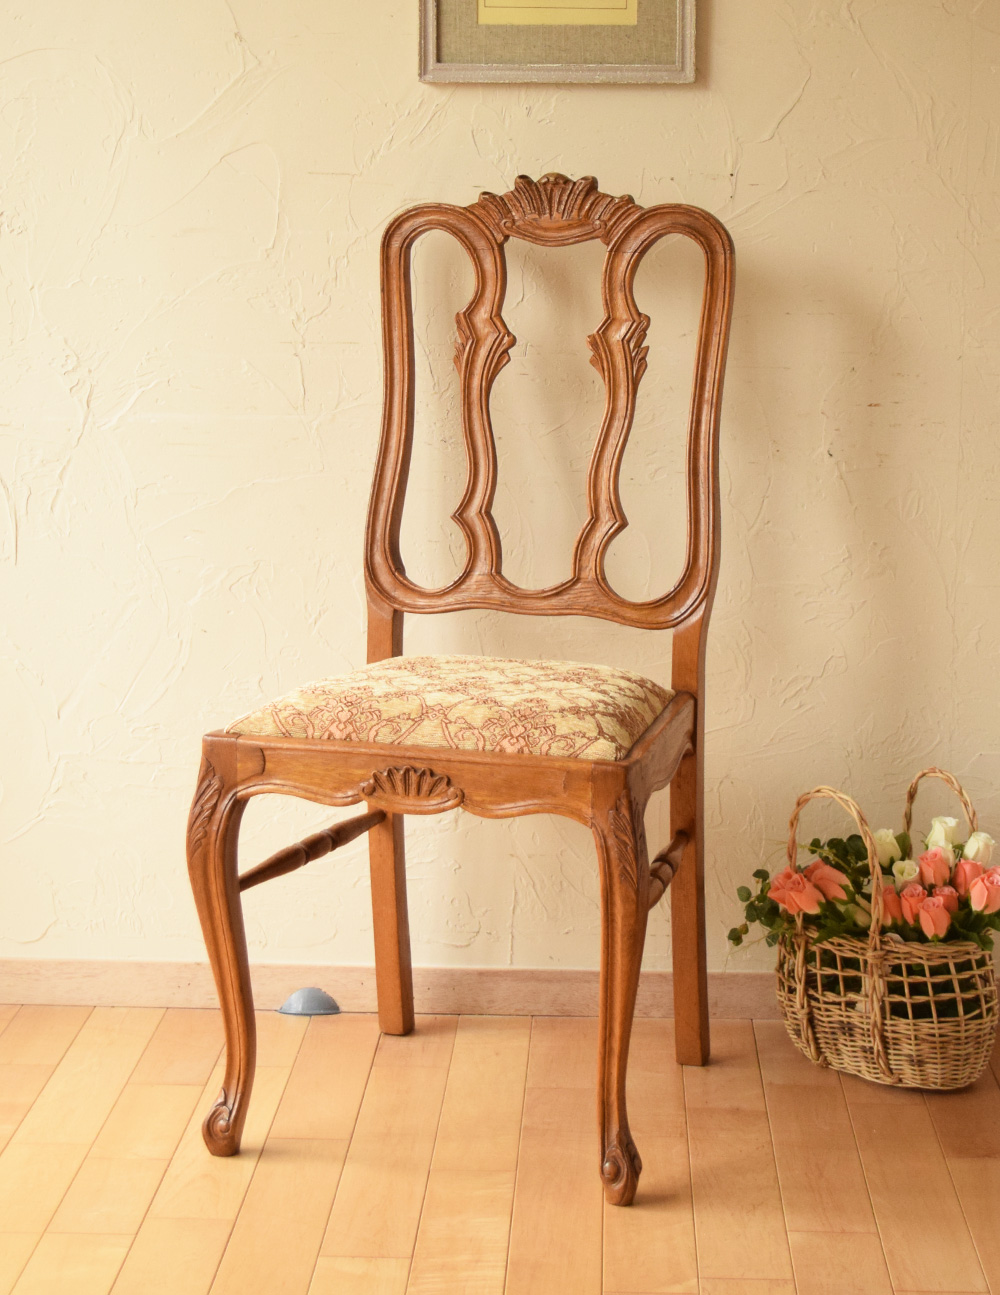 装飾が美しいフランスの椅子 アンティークダイニングチェア J 563 C アンティークチェア 椅子